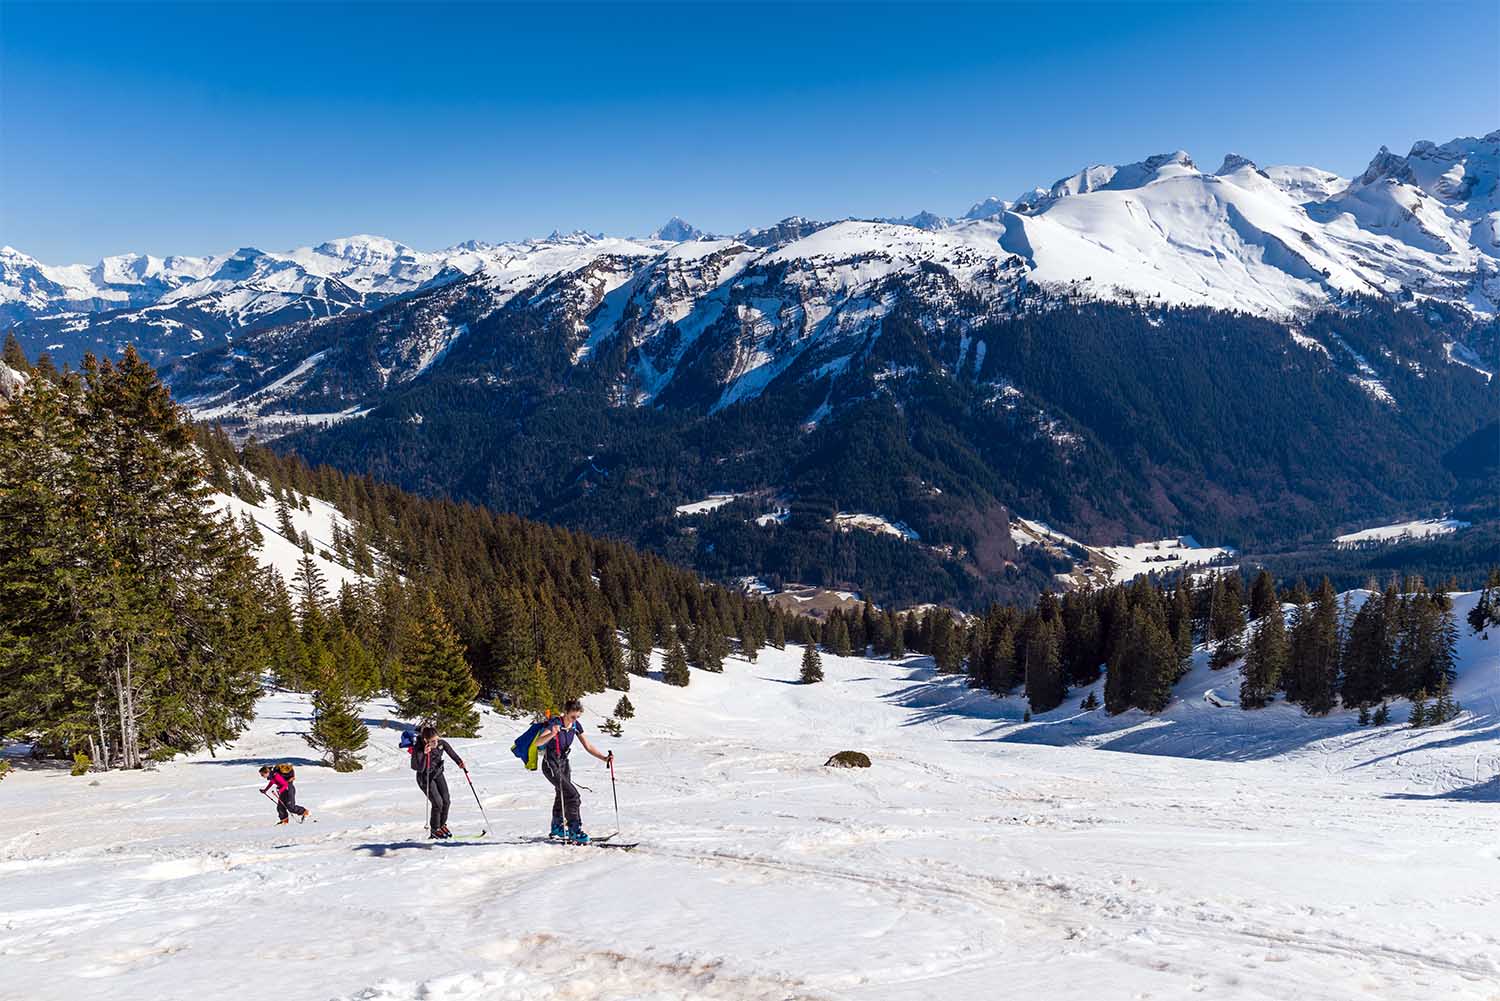 journée ski de randonnée encadrée par un guide/moniteur